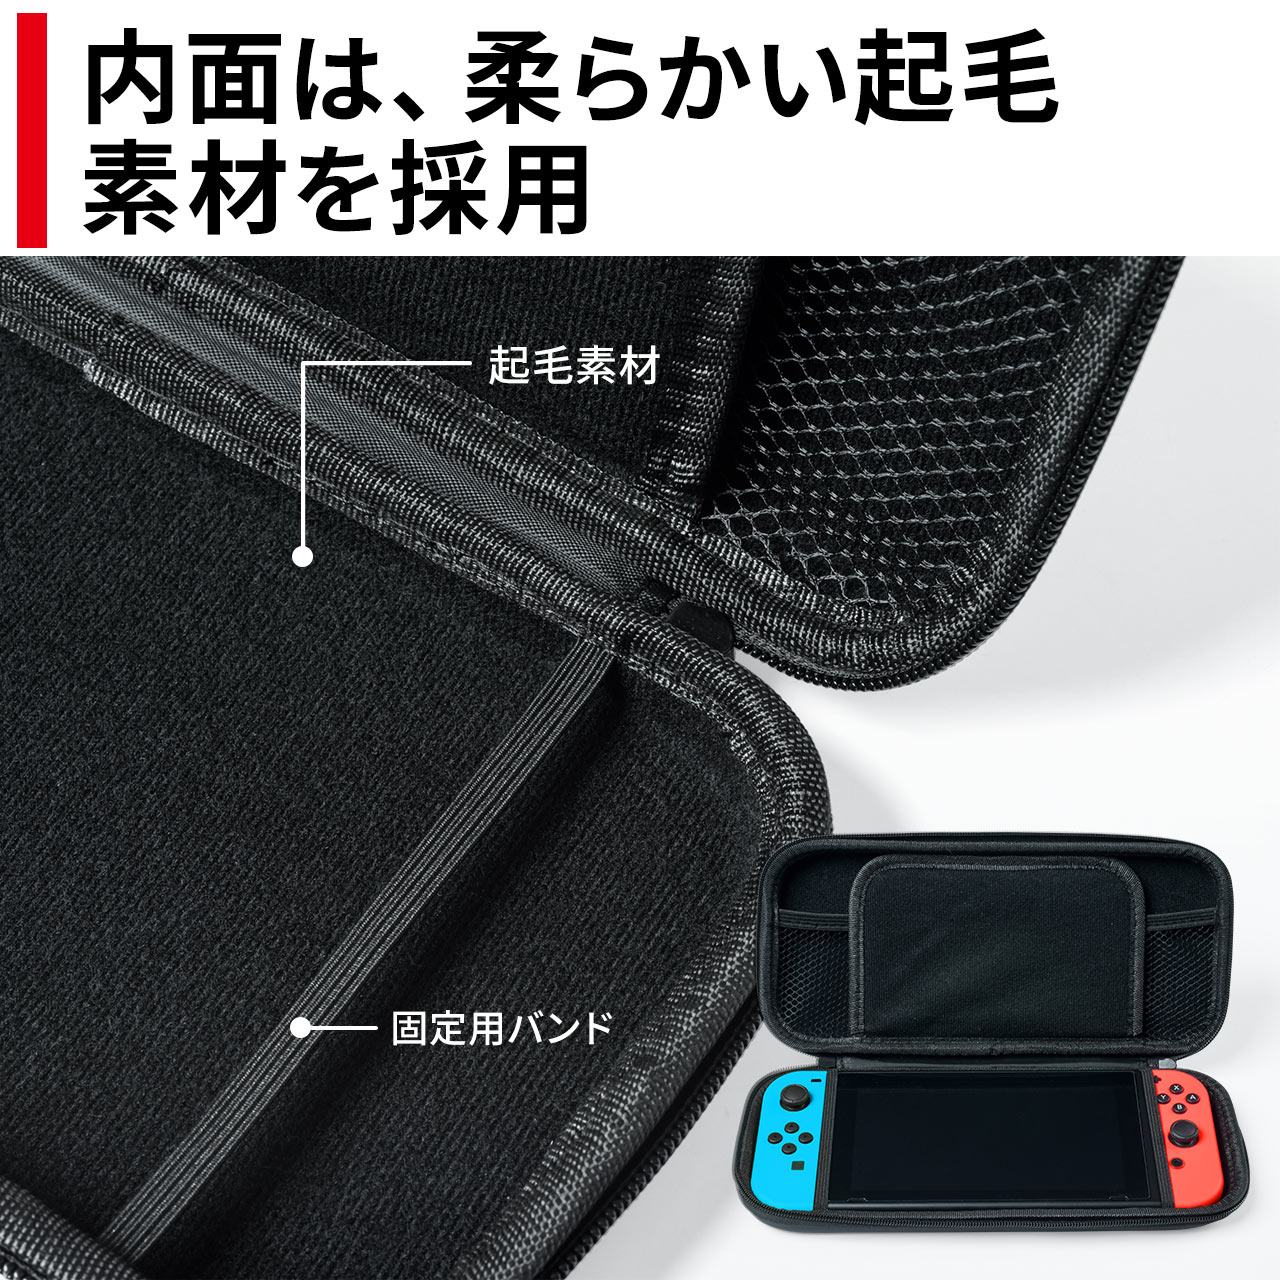 Nintendo Switch専用 セミハードケース 画面保護ガラスフィルム クリーニングクロス 3点セット ブラック×レッド 200-NSW001BK2